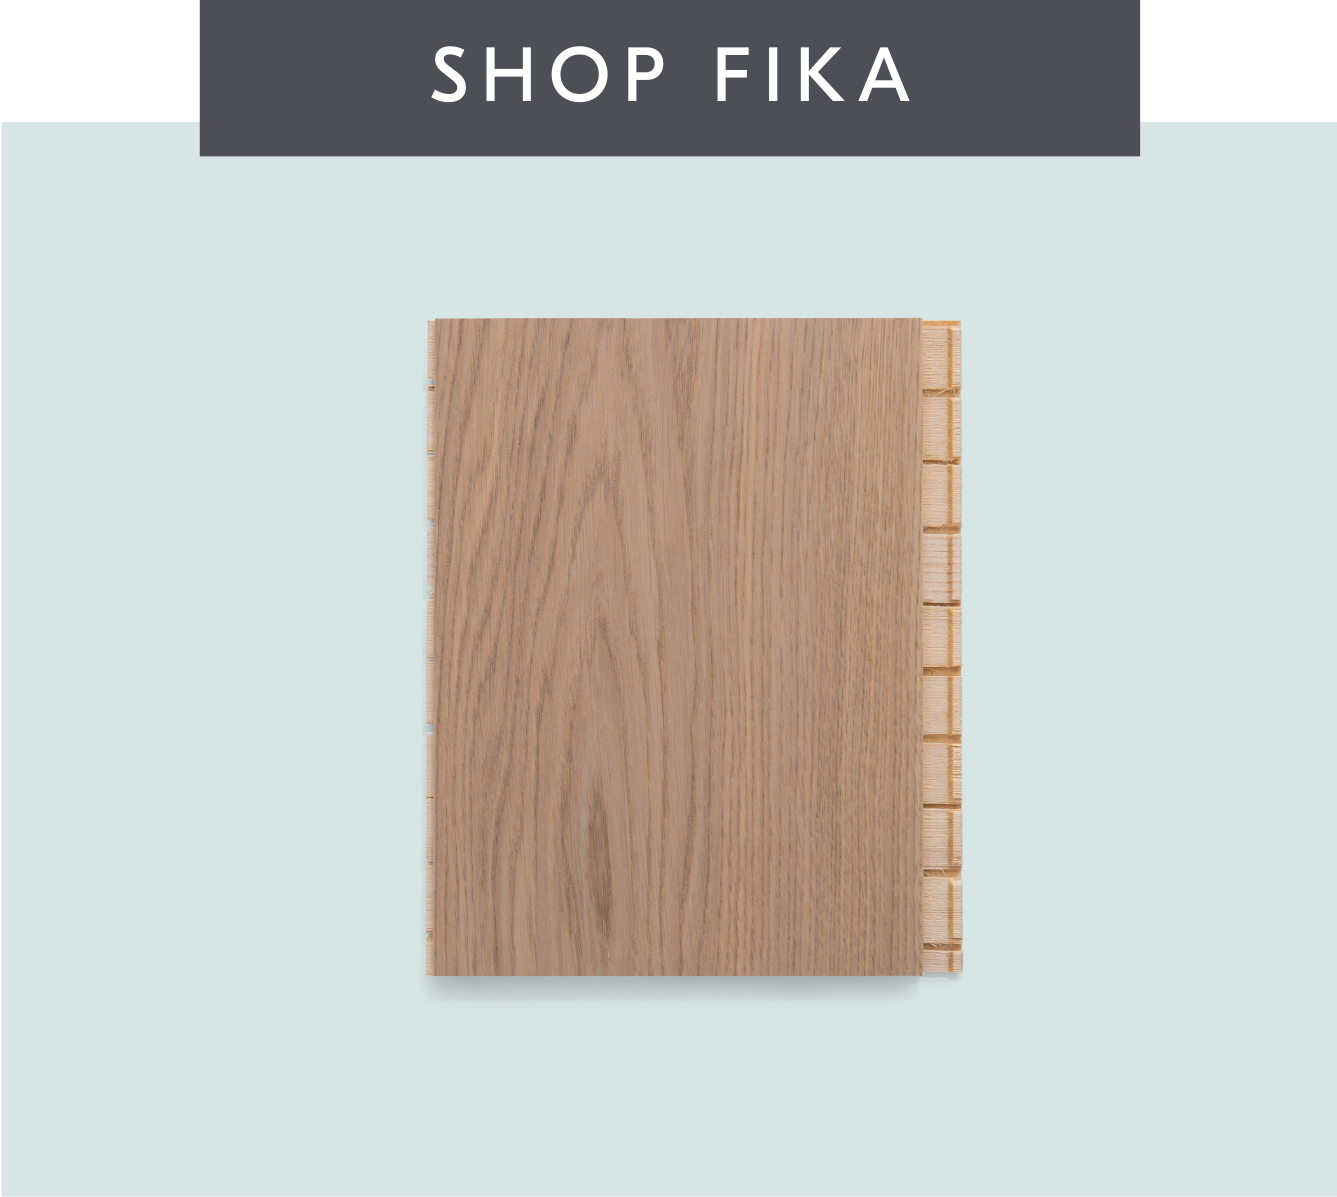 Shop Fika wide plank white oak flooring by Stuga